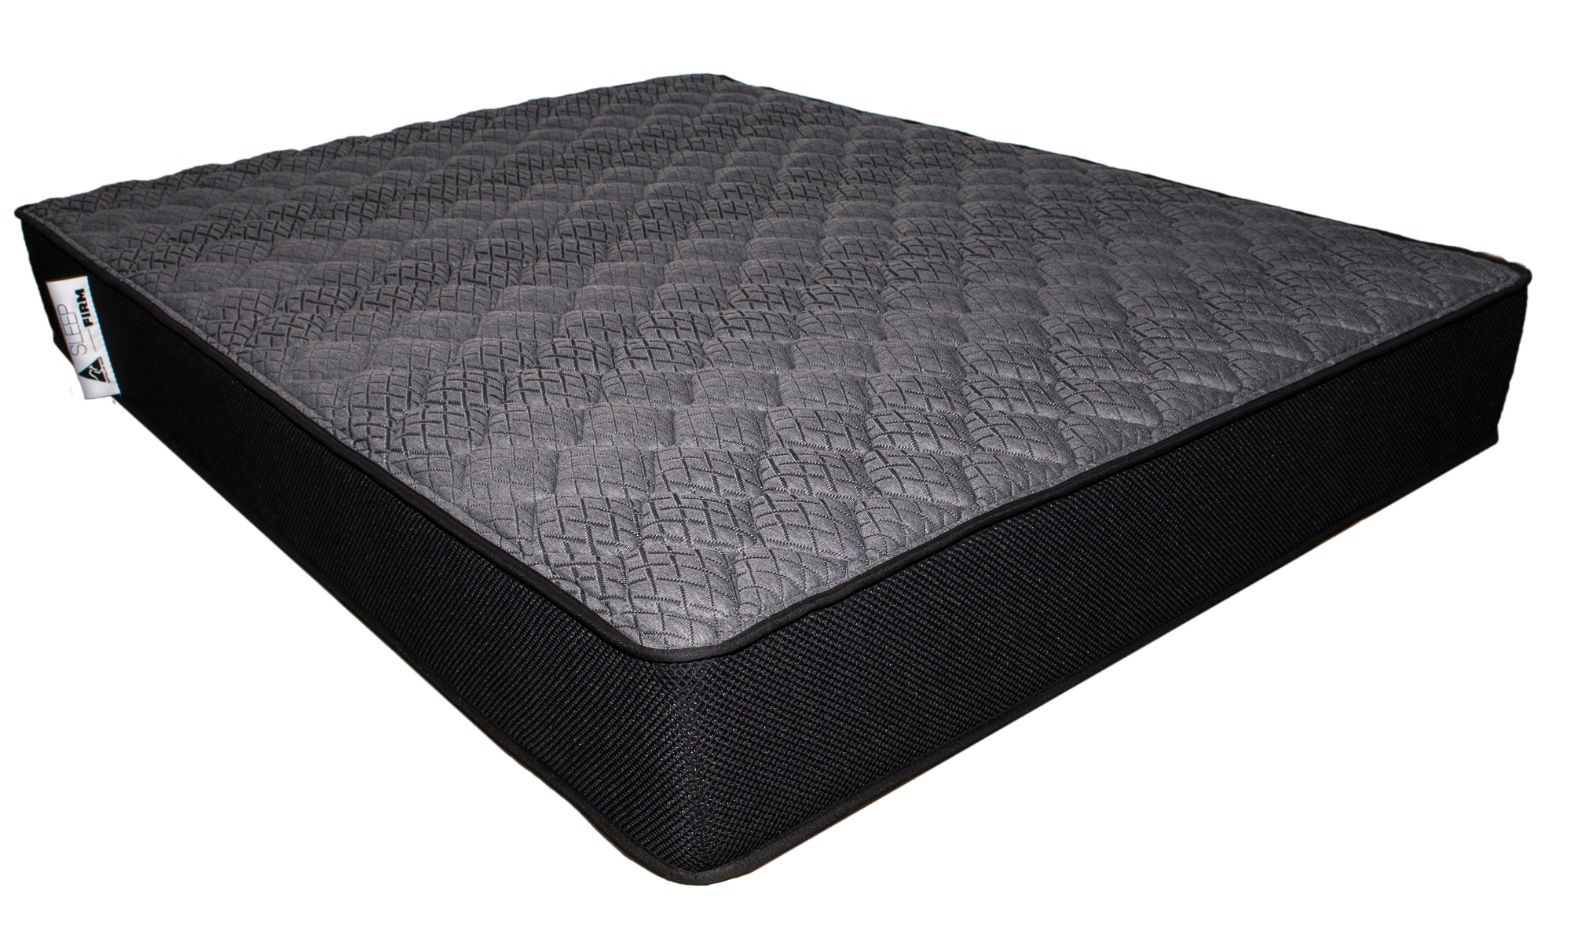 sleep on a firm mattress